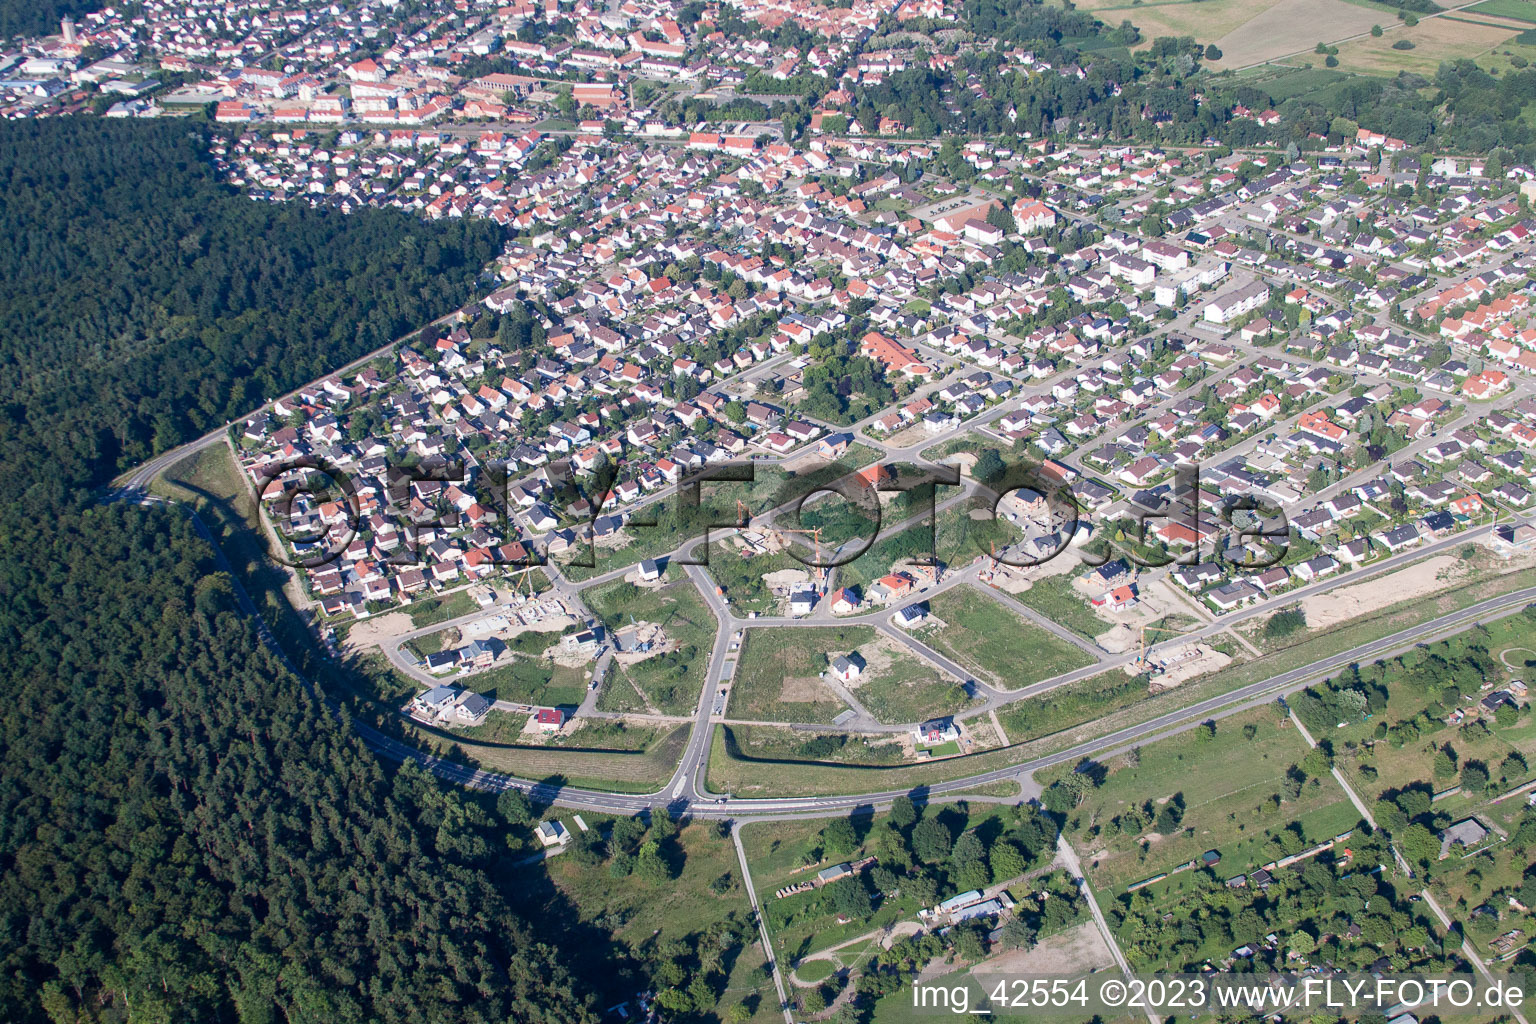 Jockgrim, Neubaugebiet West im Bundesland Rheinland-Pfalz, Deutschland aus der Luft betrachtet